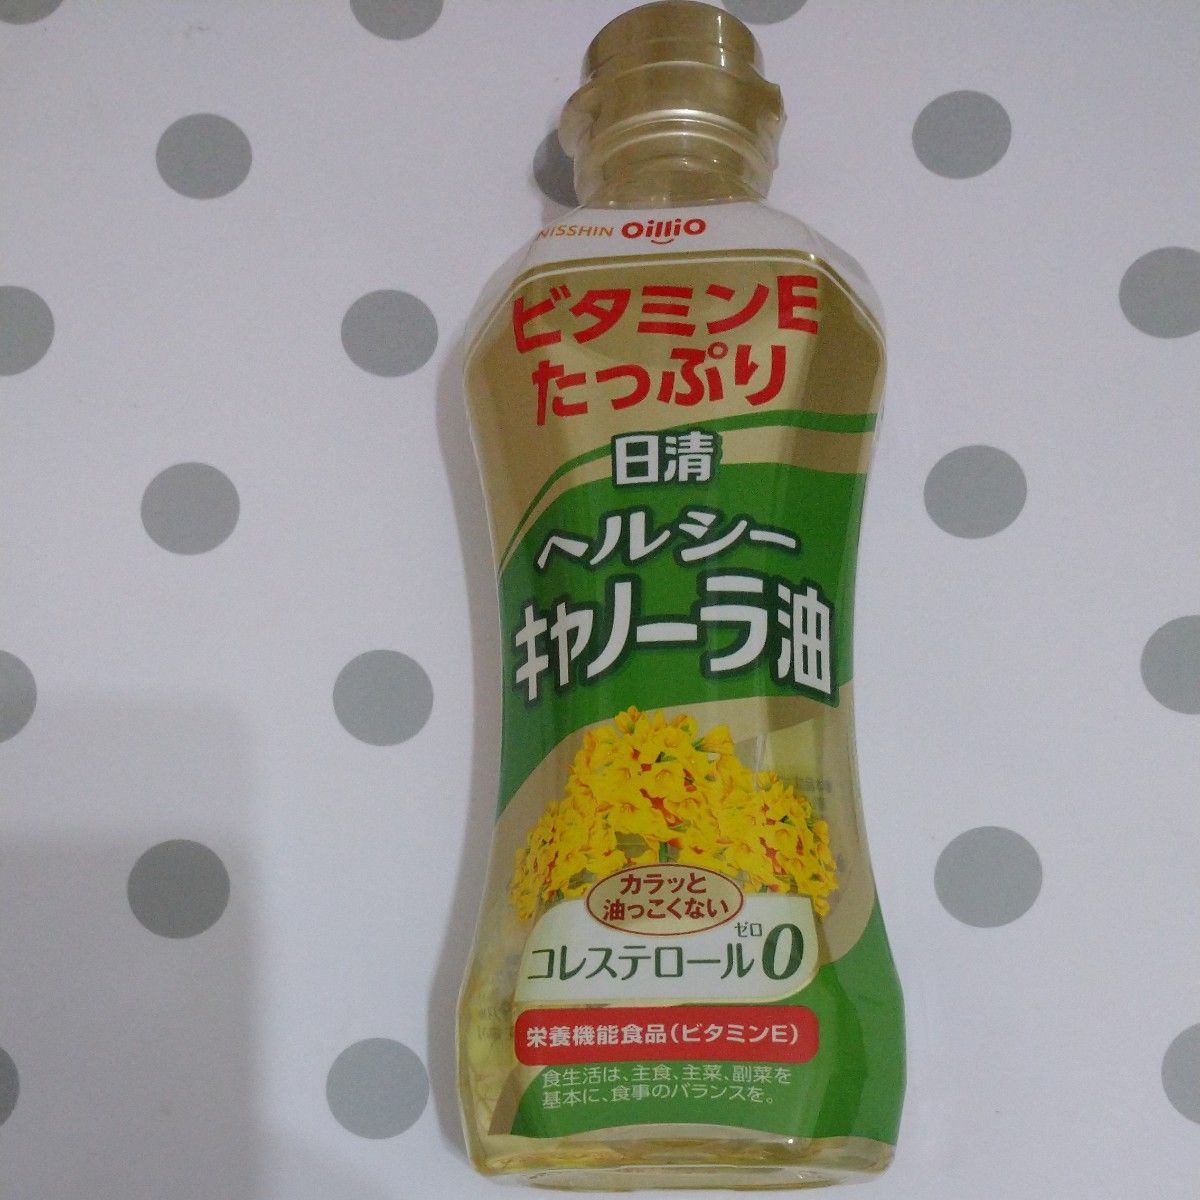 日清オイリオ【 食用油3本セット】 キャノーラ油 ベジオイル